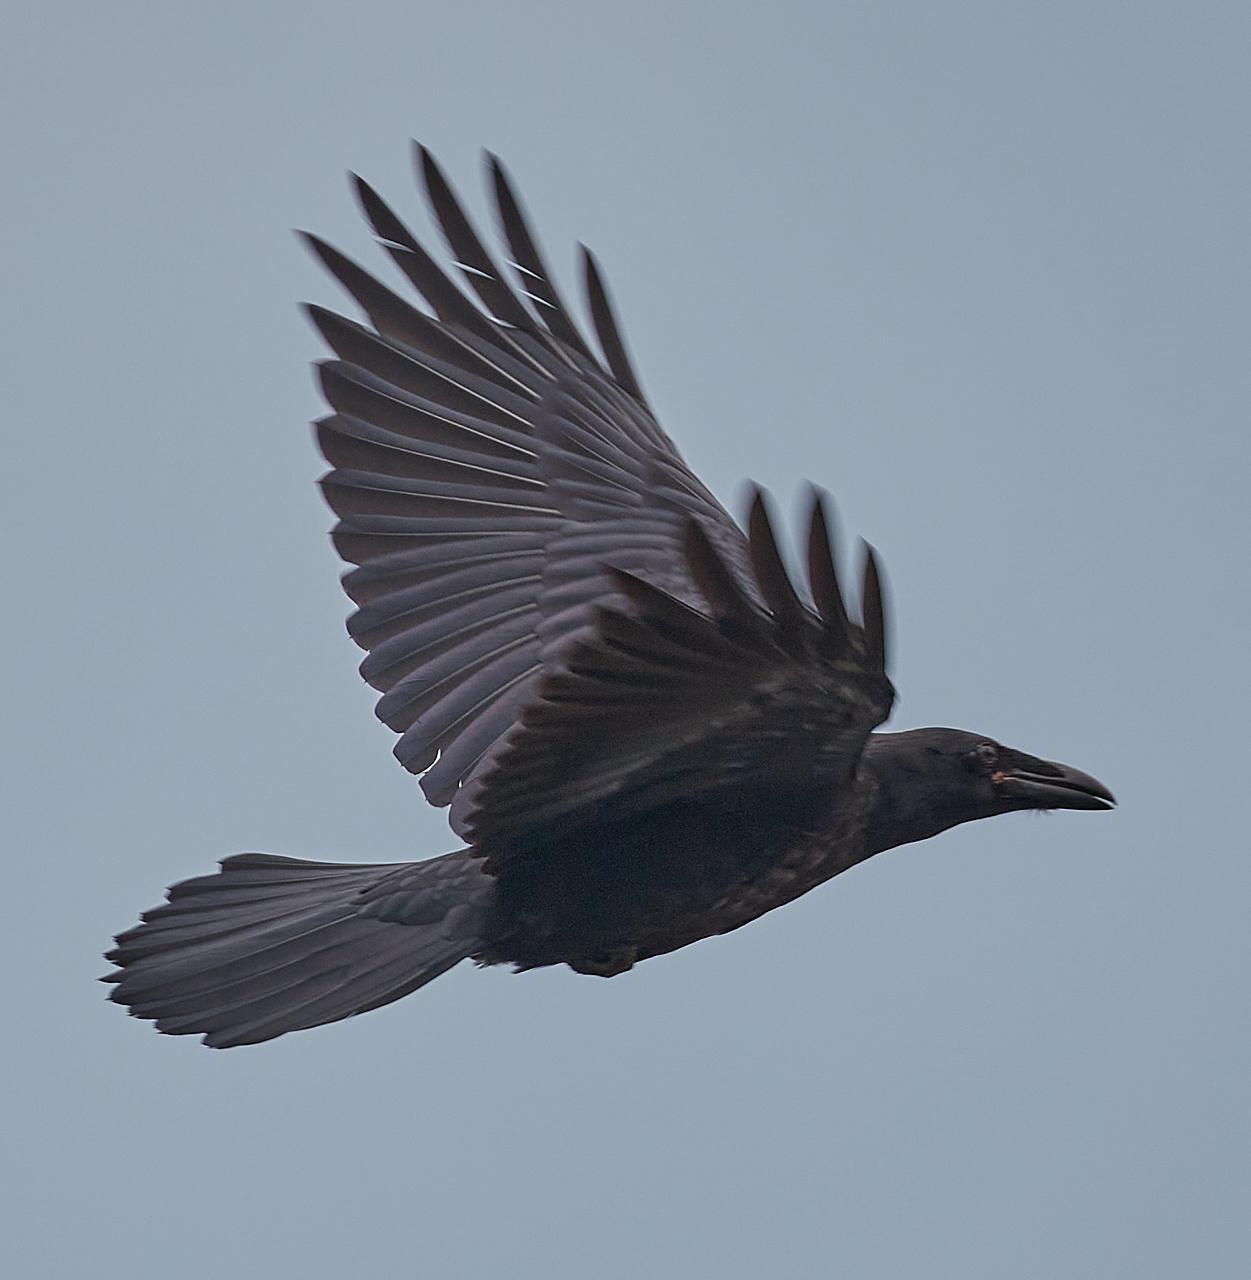 Common Raven Photo by Jim Werkowski